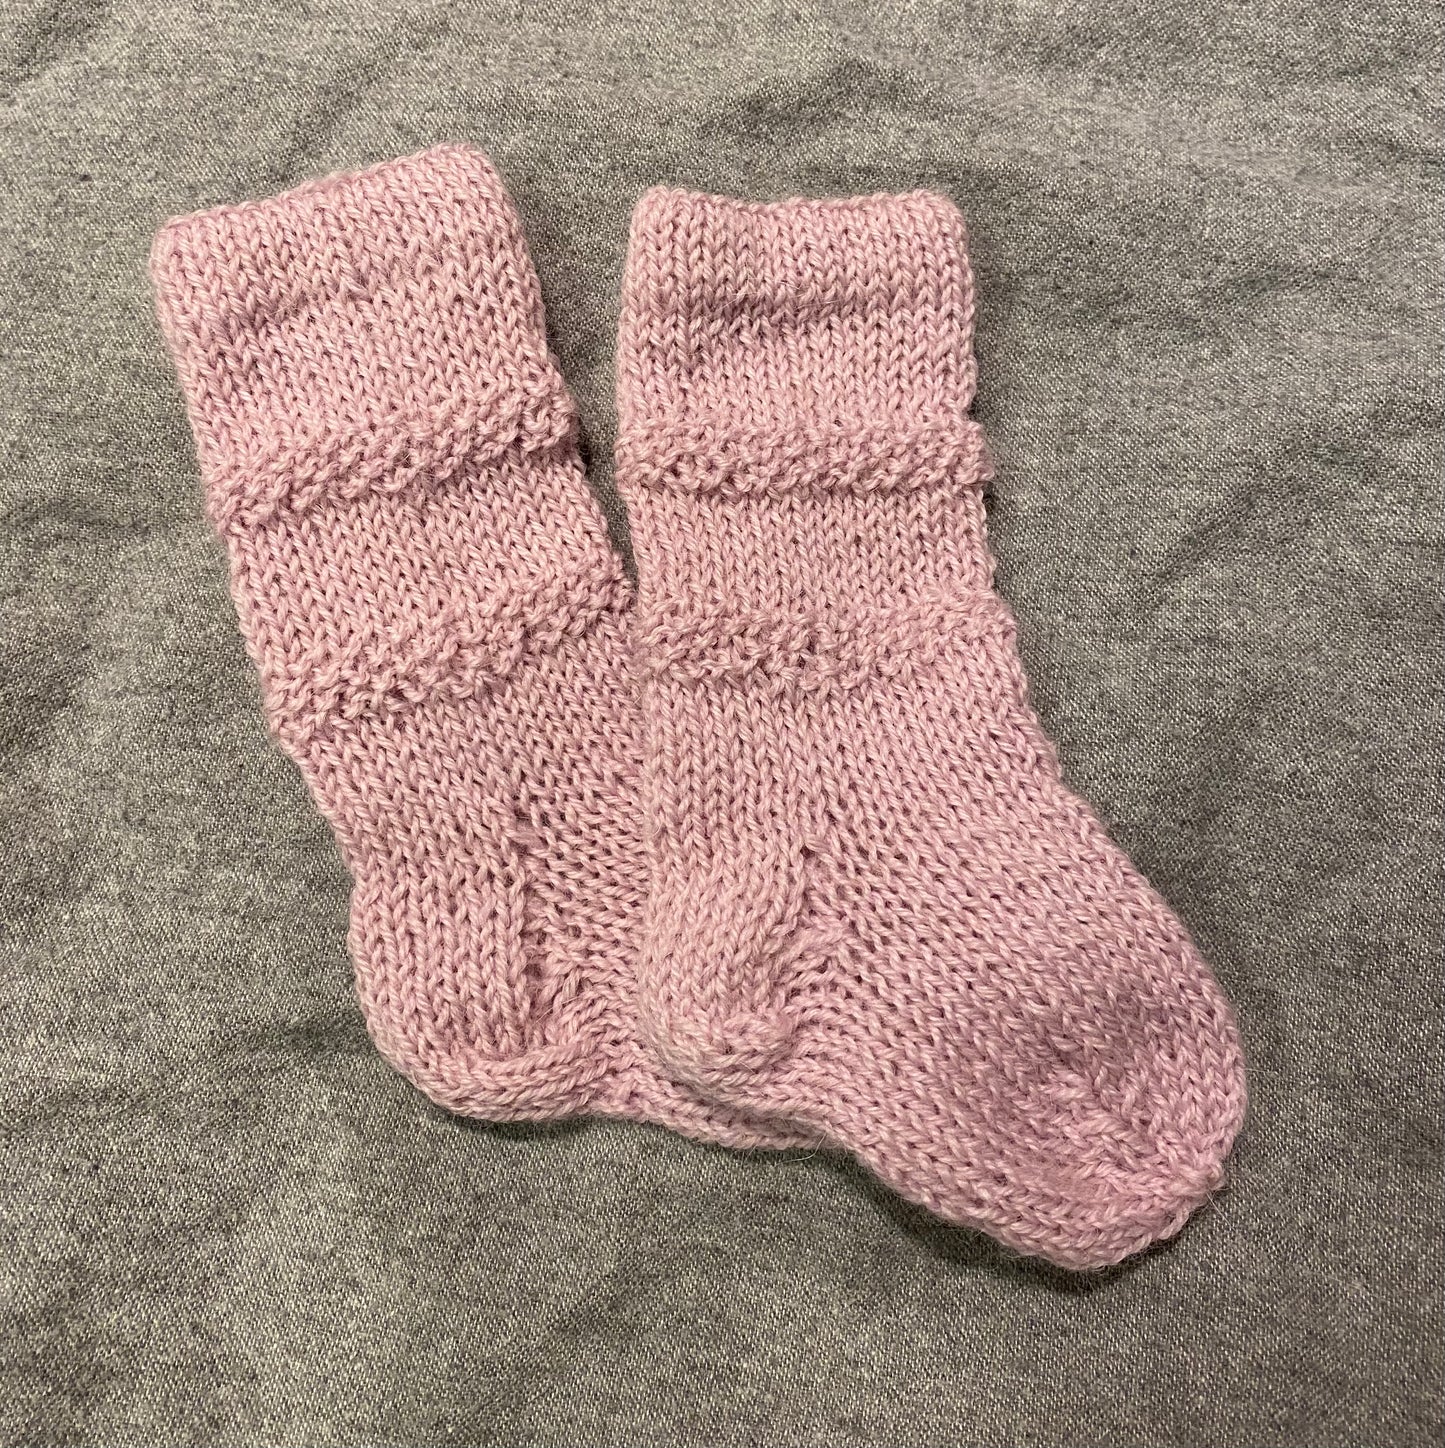 Inger's Socks (English)